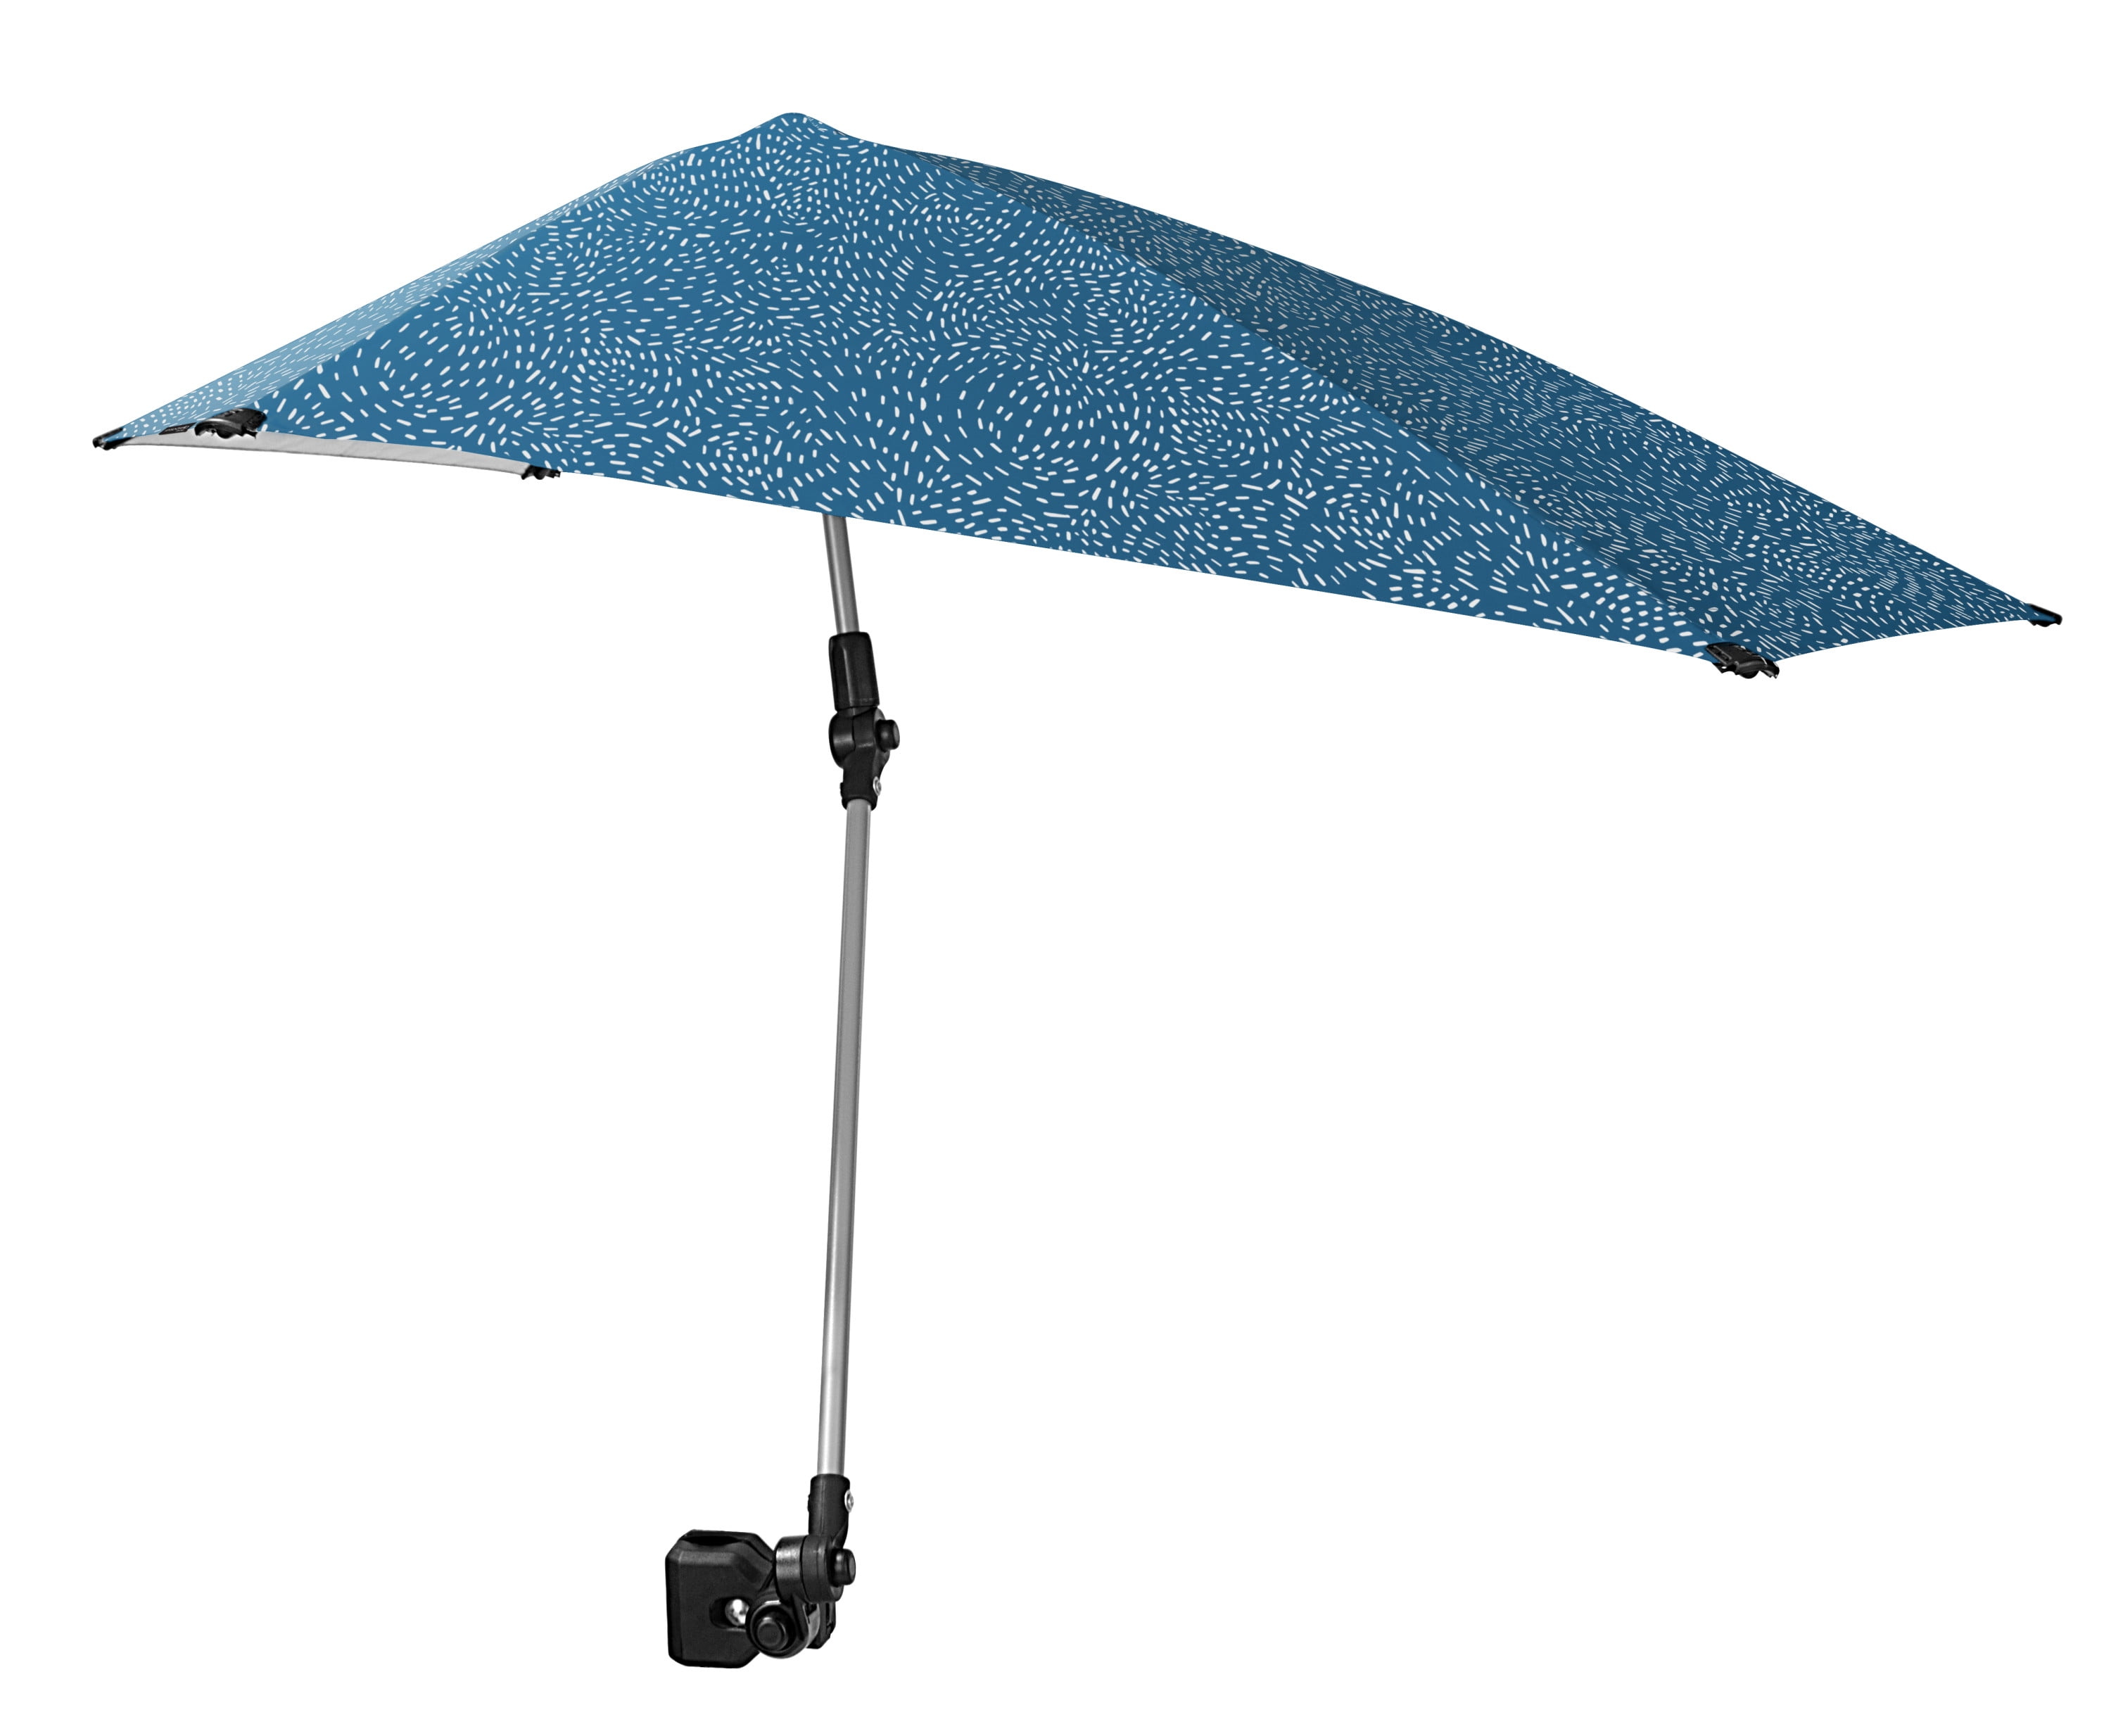 Sport-Brella Versa-Brella All Position Umbrella with Universal